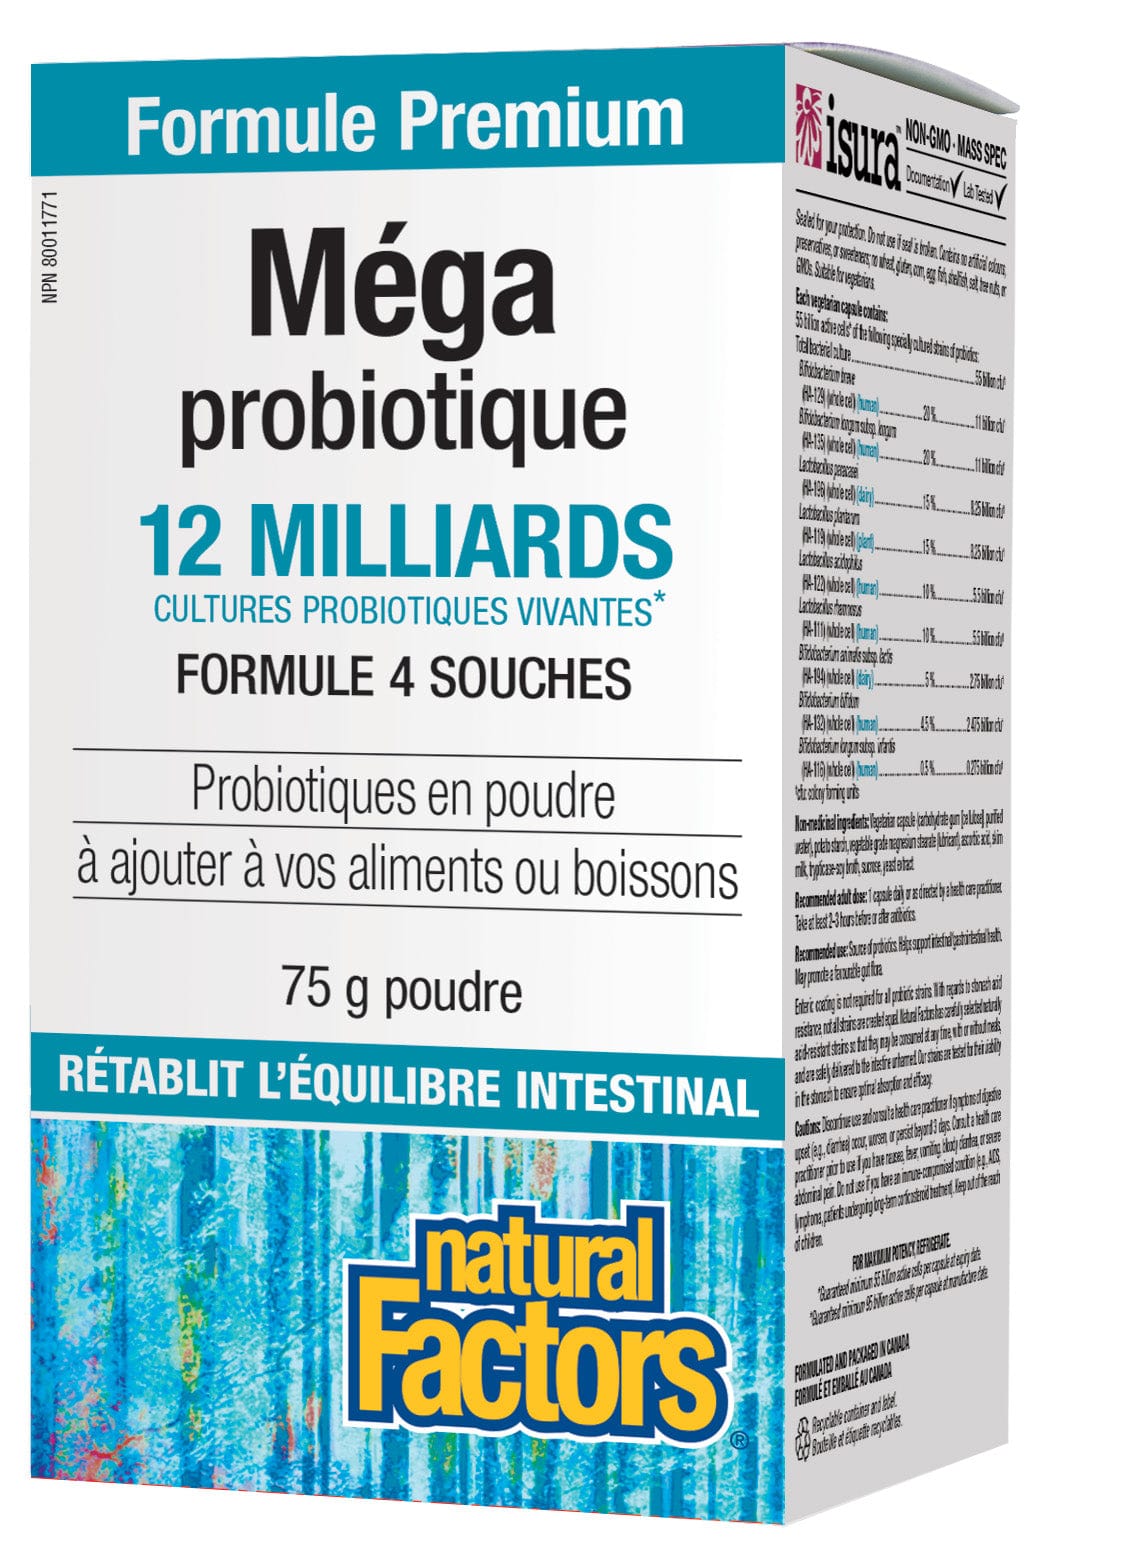 NATURAL FACTORS Suppléments Mega probiotic poudre (12 milliards) 75g
DATE DE PÉREMPTION : 31 JUILLET 2024